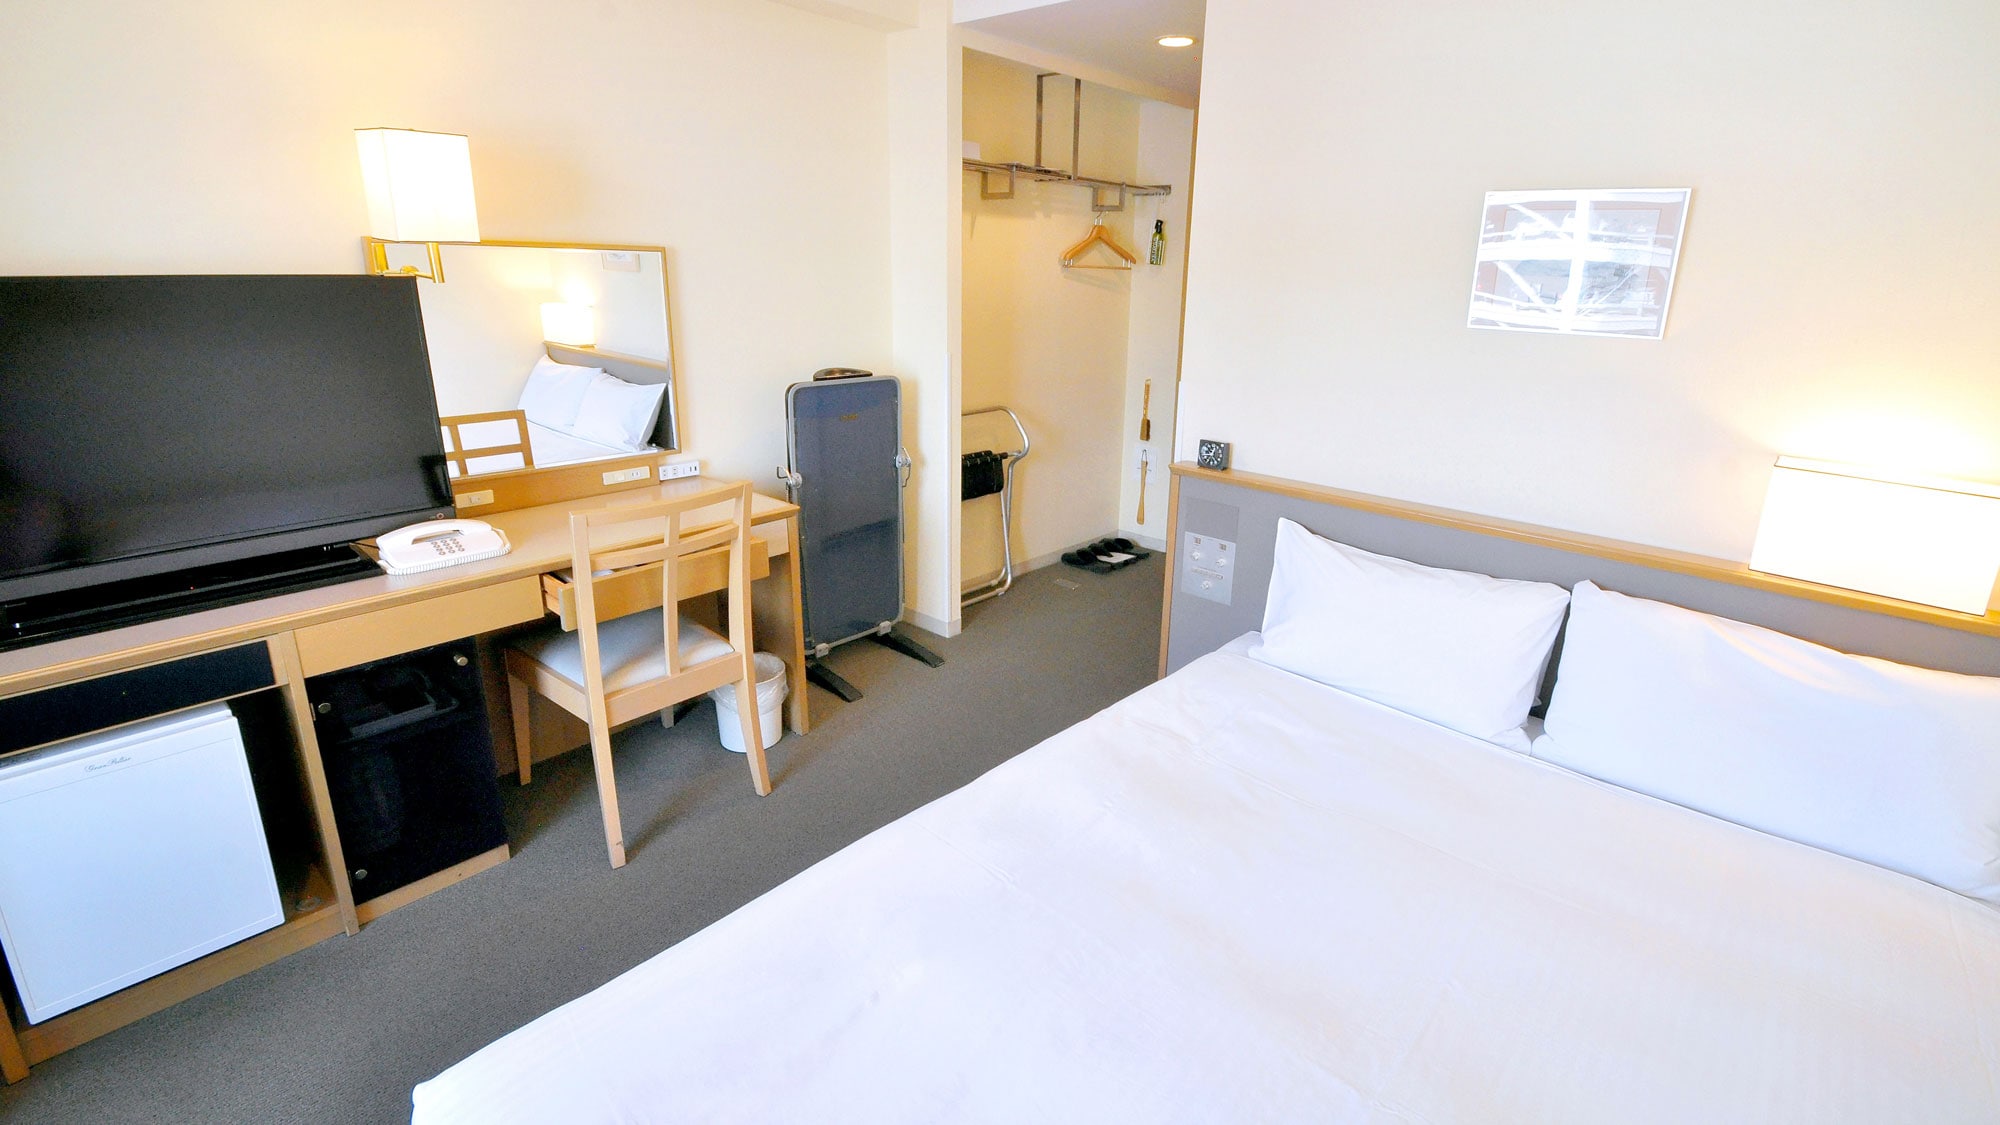 【이코노미 더블】 싱글 룸과 같은 형식의 객실이 2 명이라도 이용 가능한 합리적인 객실입니다.